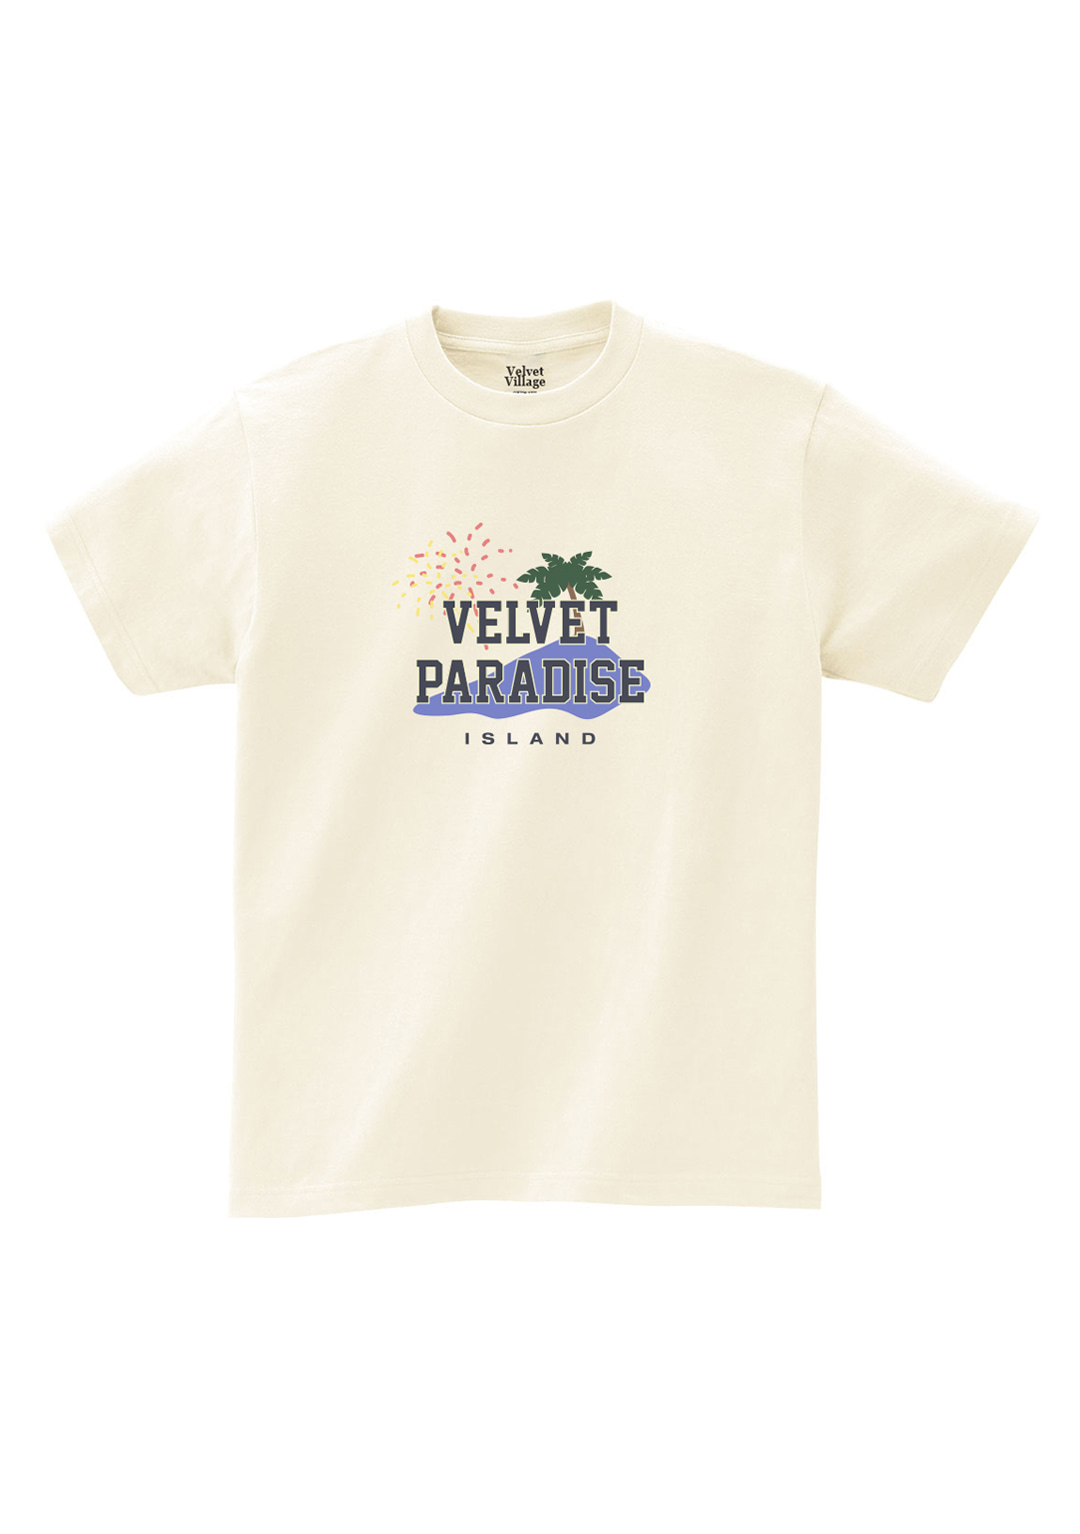 Velvet Paradise T-shirt (Ivory)